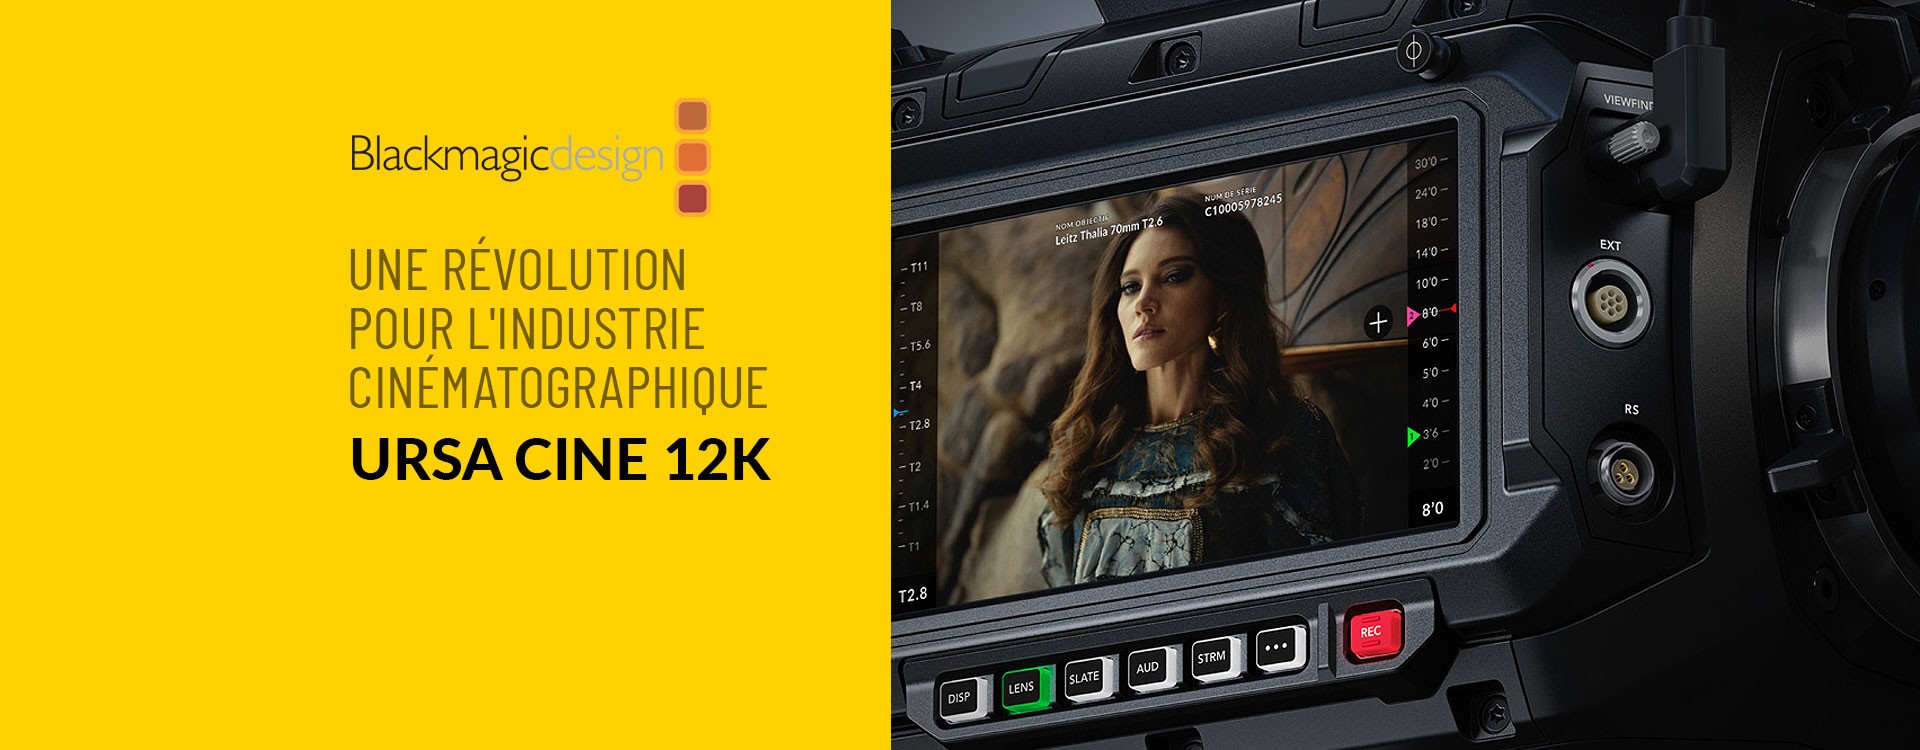 Blackmagic URSA Cine 12K : Une révolution pour l'industrie cinématographique